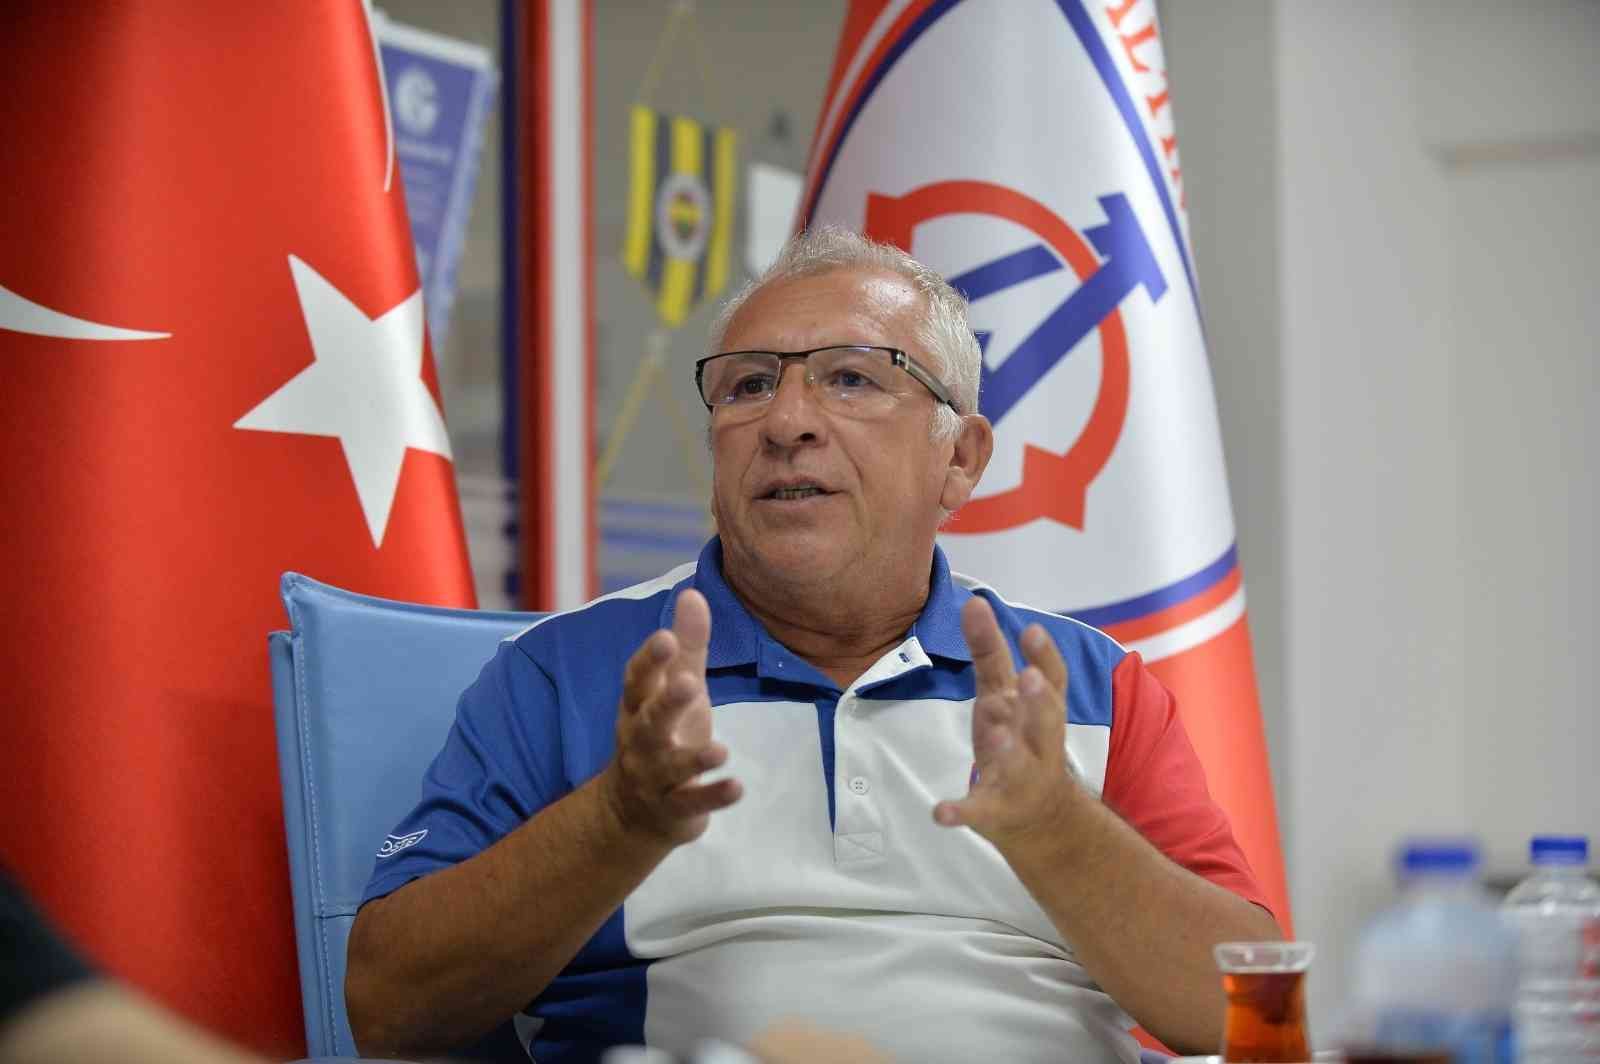 Altınordu Başkanı Özkan: “Futbolu tabana yaymanın zamanı geldi” #izmir